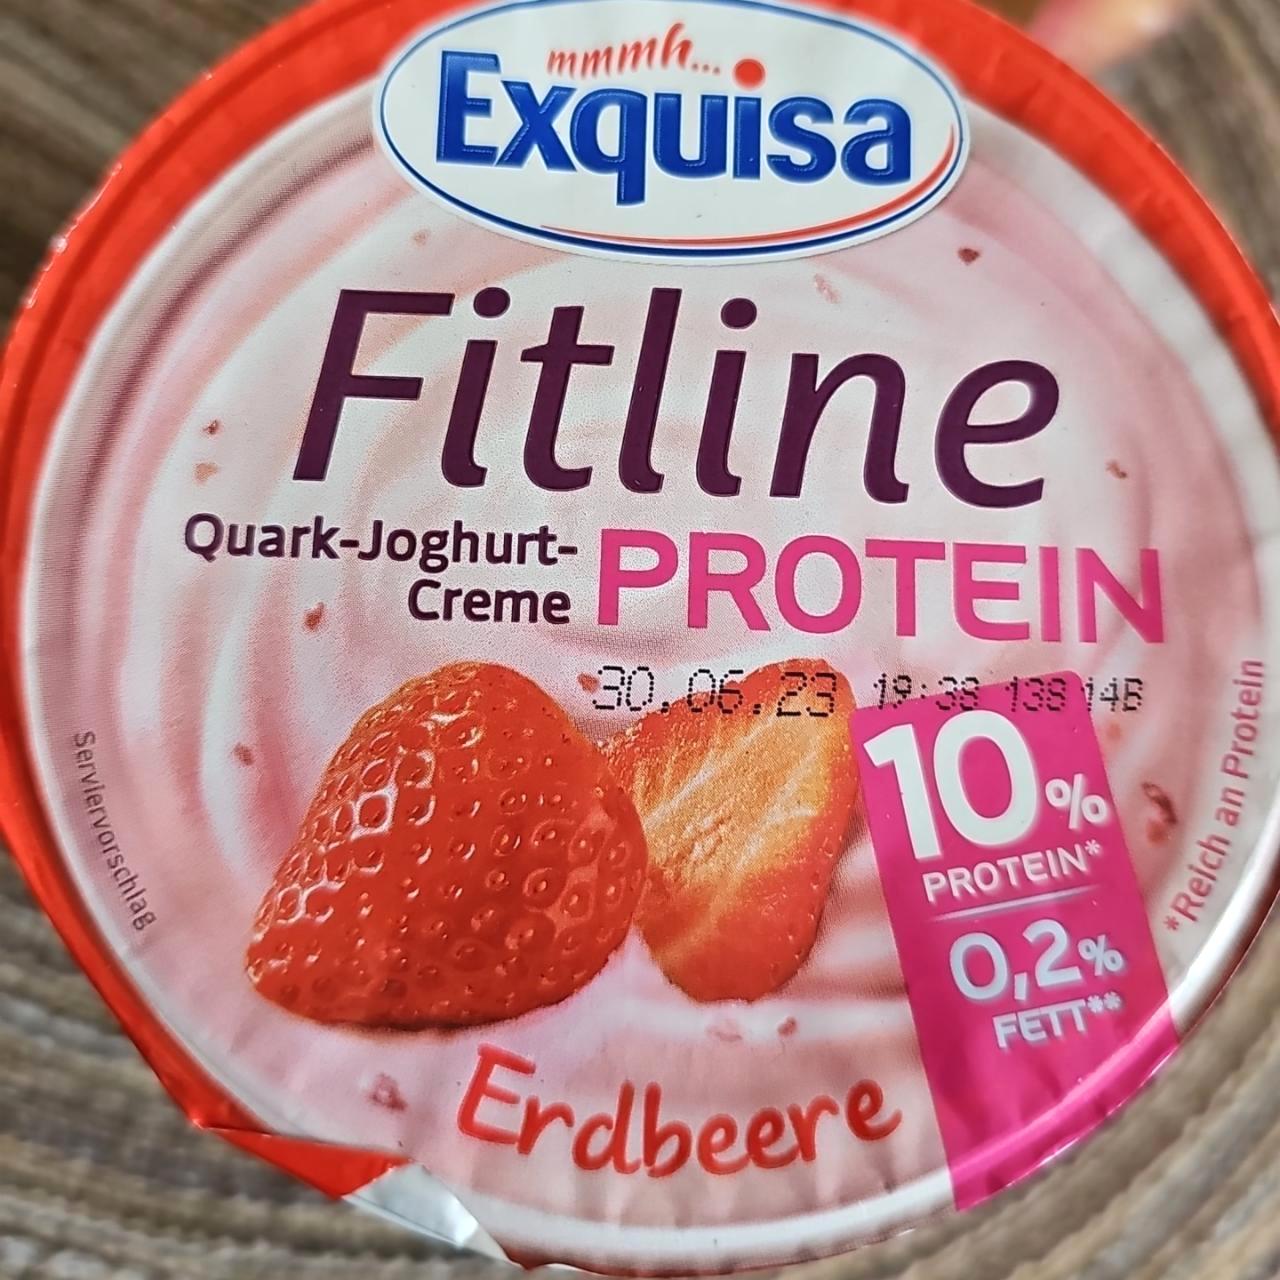 Képek - Fitline protein Erdbeere Exquisa